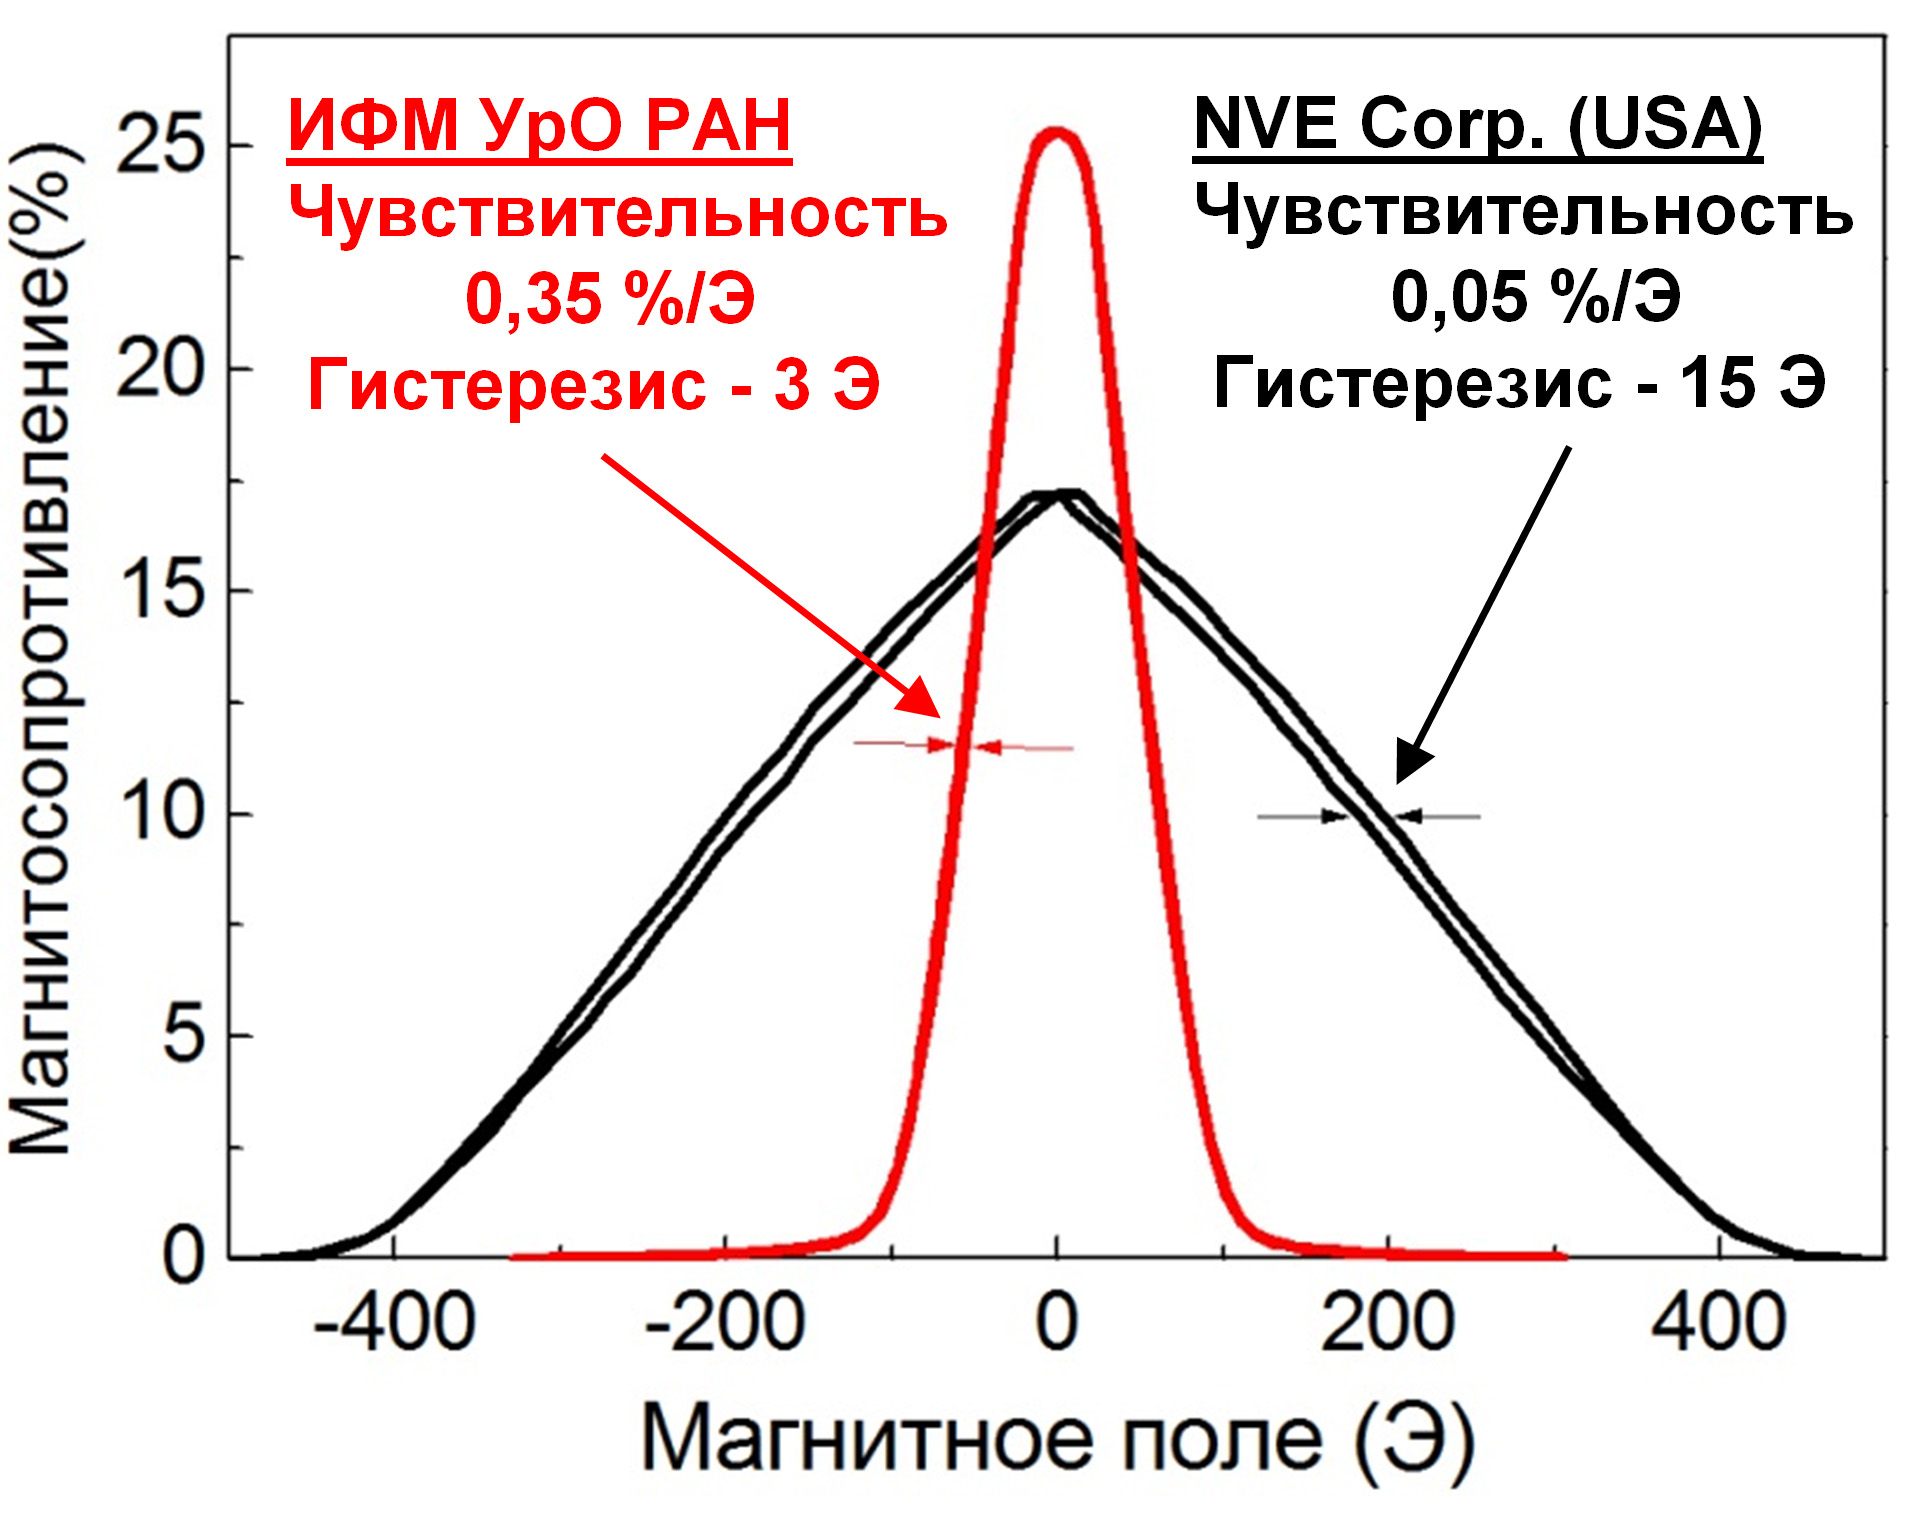 Рисунок 3. Сравнение магниторезистивных кривых для базового ГМС материала фирмы NVE Corporation (черная кривая) и ГМС сверхрешетки, разработанной в ИФМ УрО РАН (красная кривая)